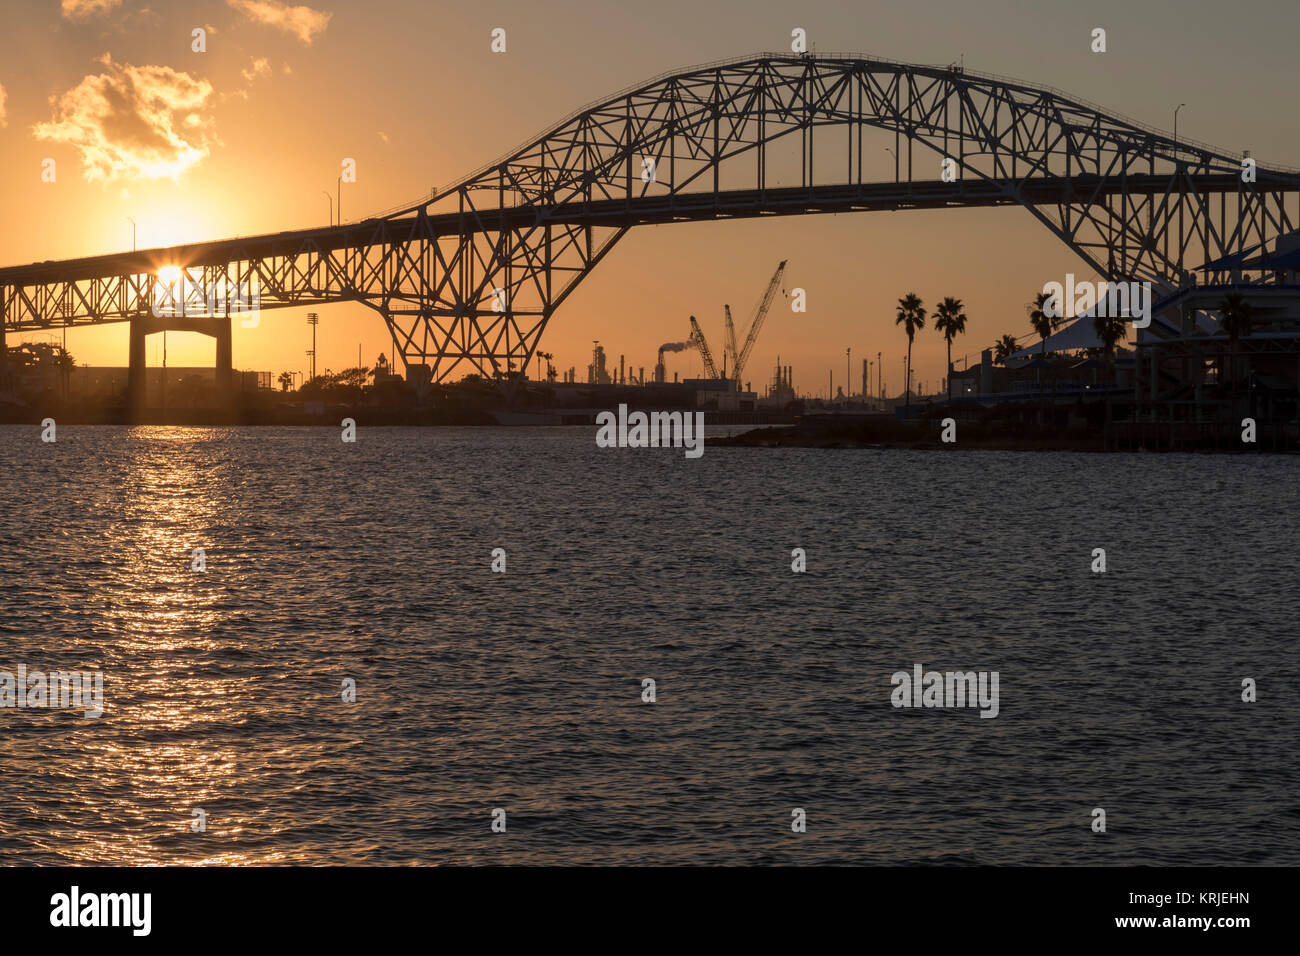 Corpus Christi, Texas - Le Corpus Christi Harbour Bridge nous porte l'autoroute 181 dans l'ensemble du Corpus Christi ship canal. Banque D'Images